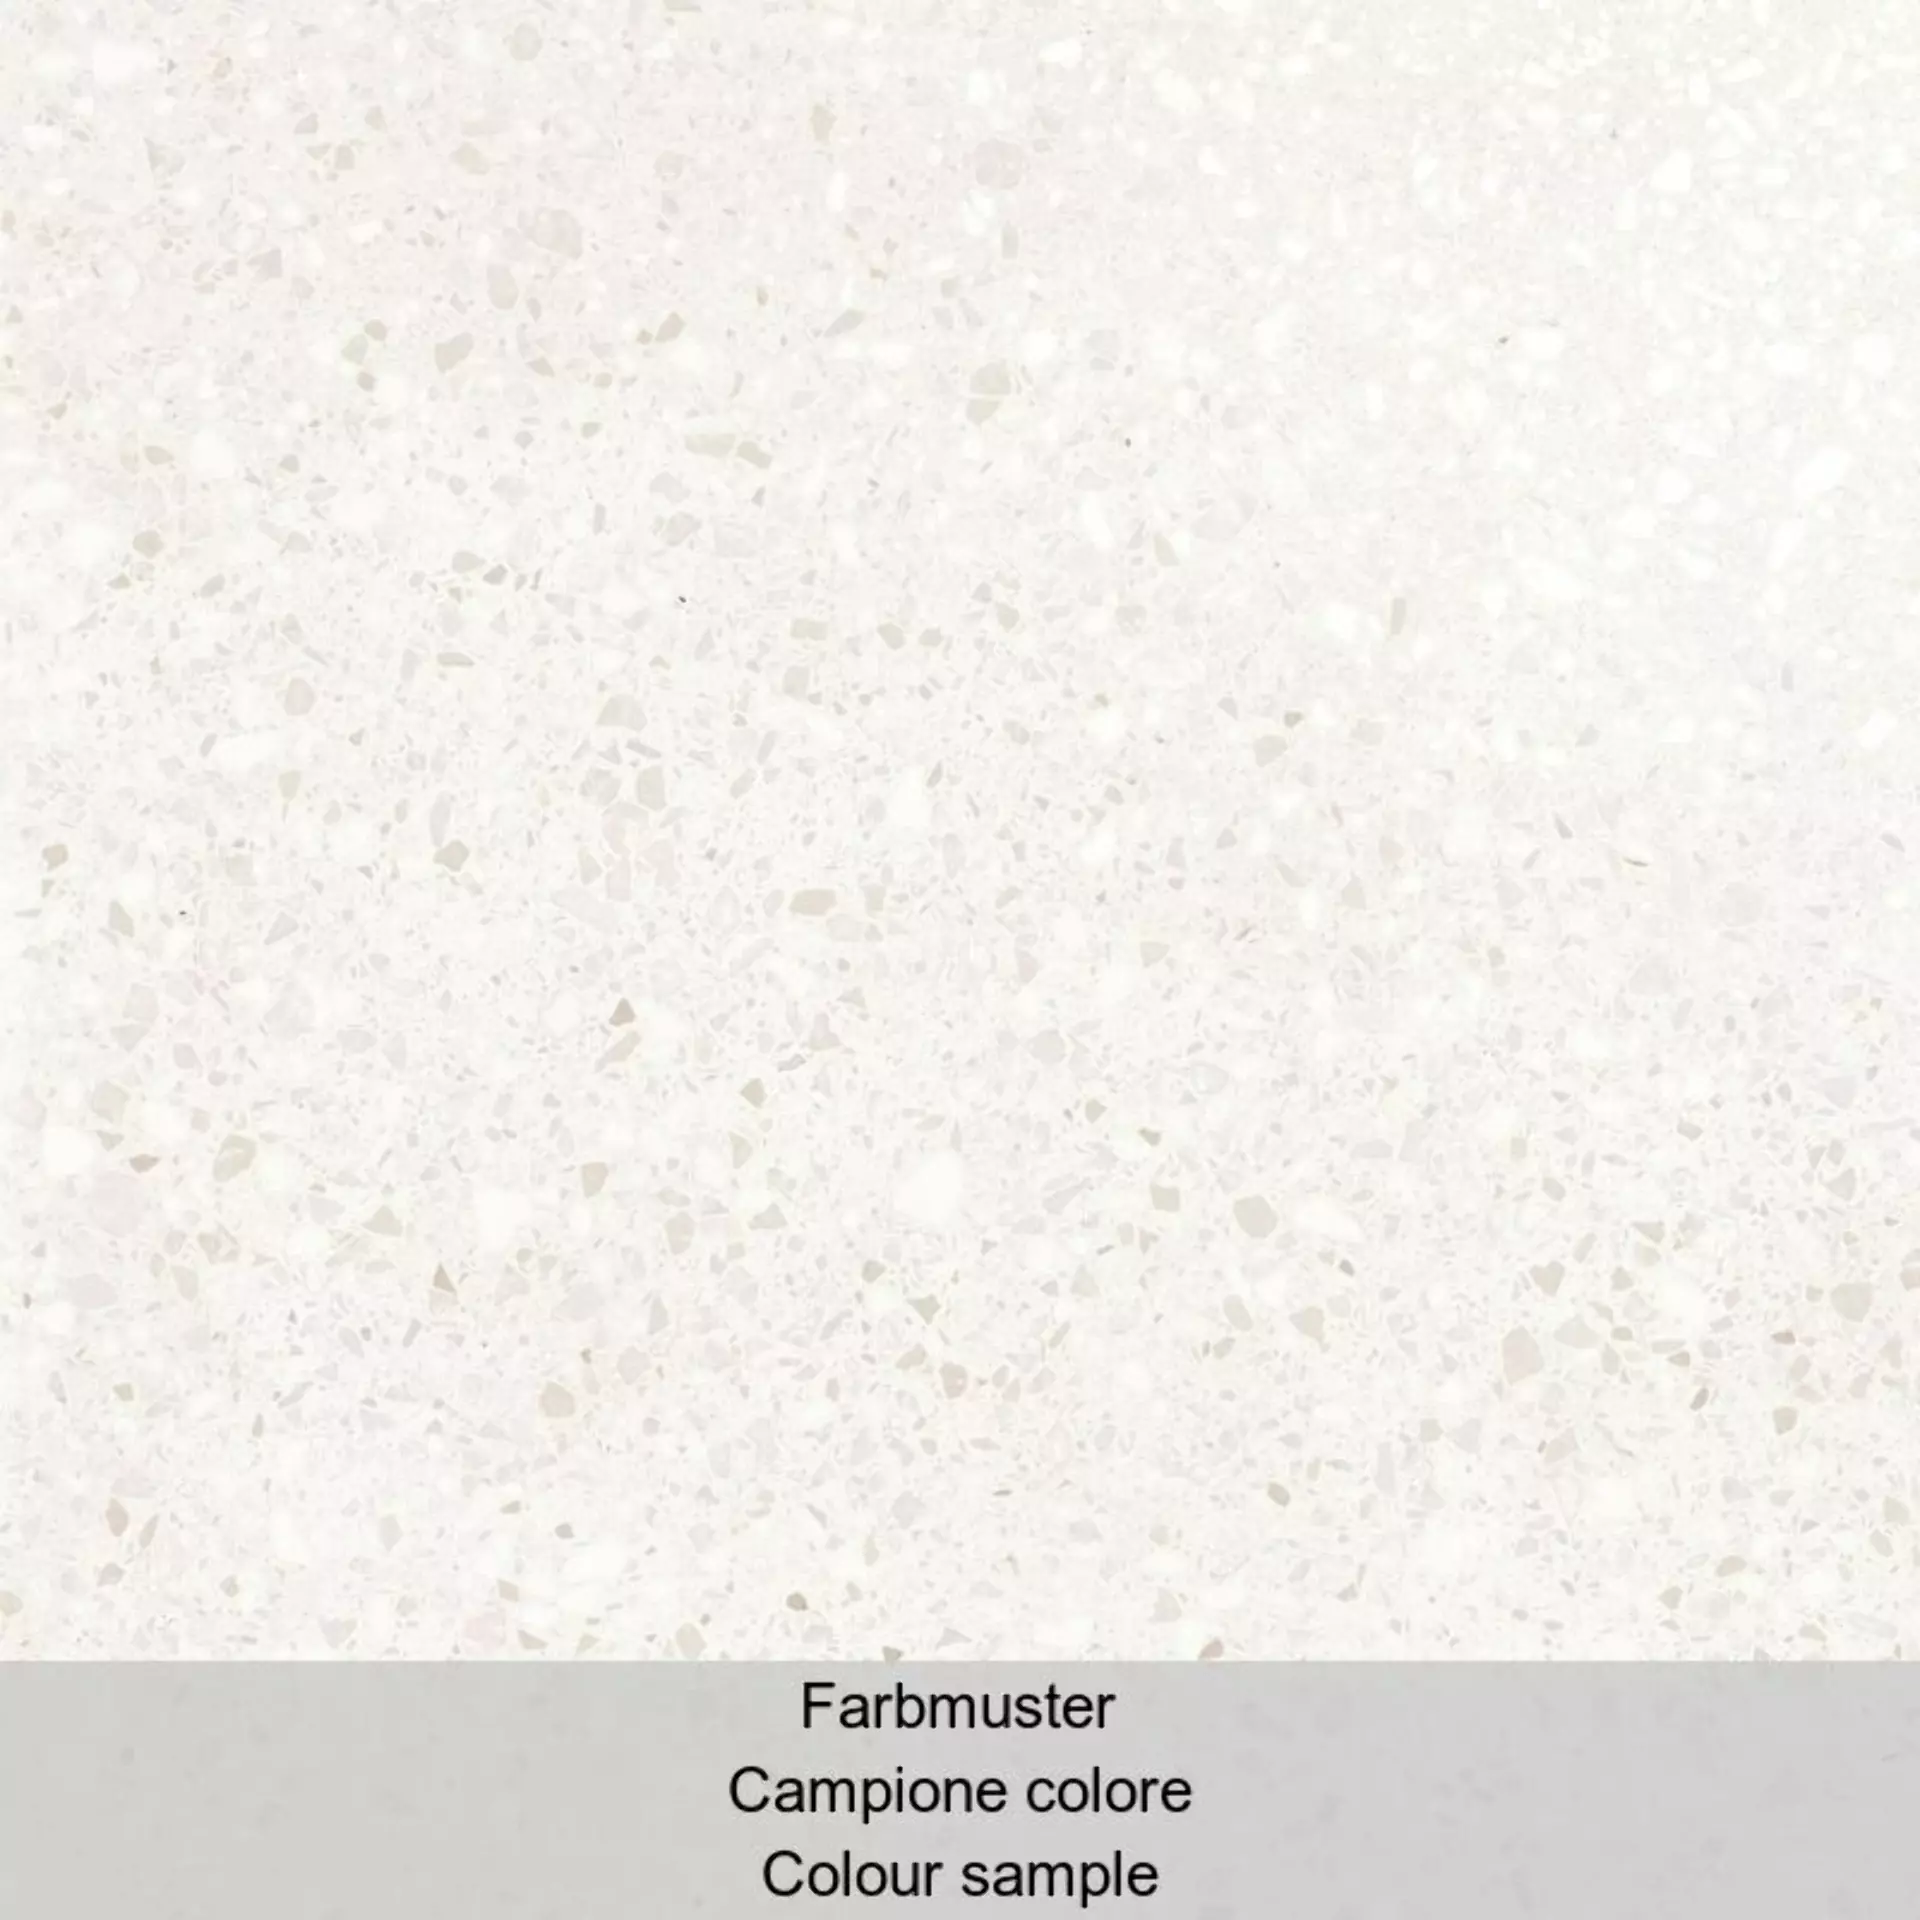 Casalgrande Terrazzo White Lappato 11954641 60x60cm rectified 9mm